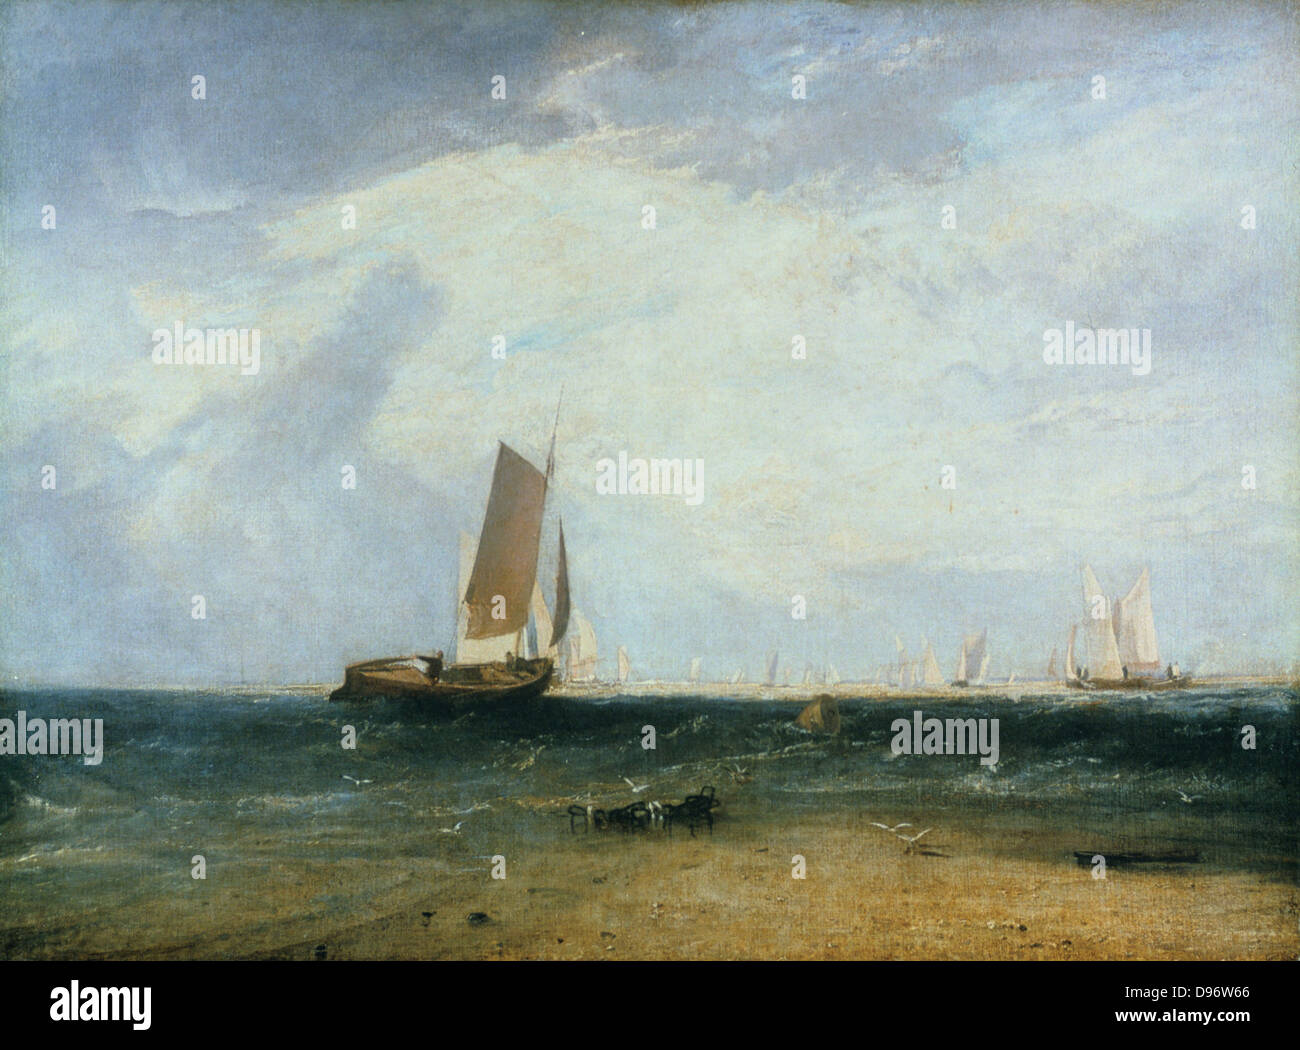 La pêche sur l'Blythe-Sands, Tide Paramètre dans' exposées 1809. Joseph Mallord William Turner (1775-1851) l'artiste anglais. Huile sur toile. Banque D'Images